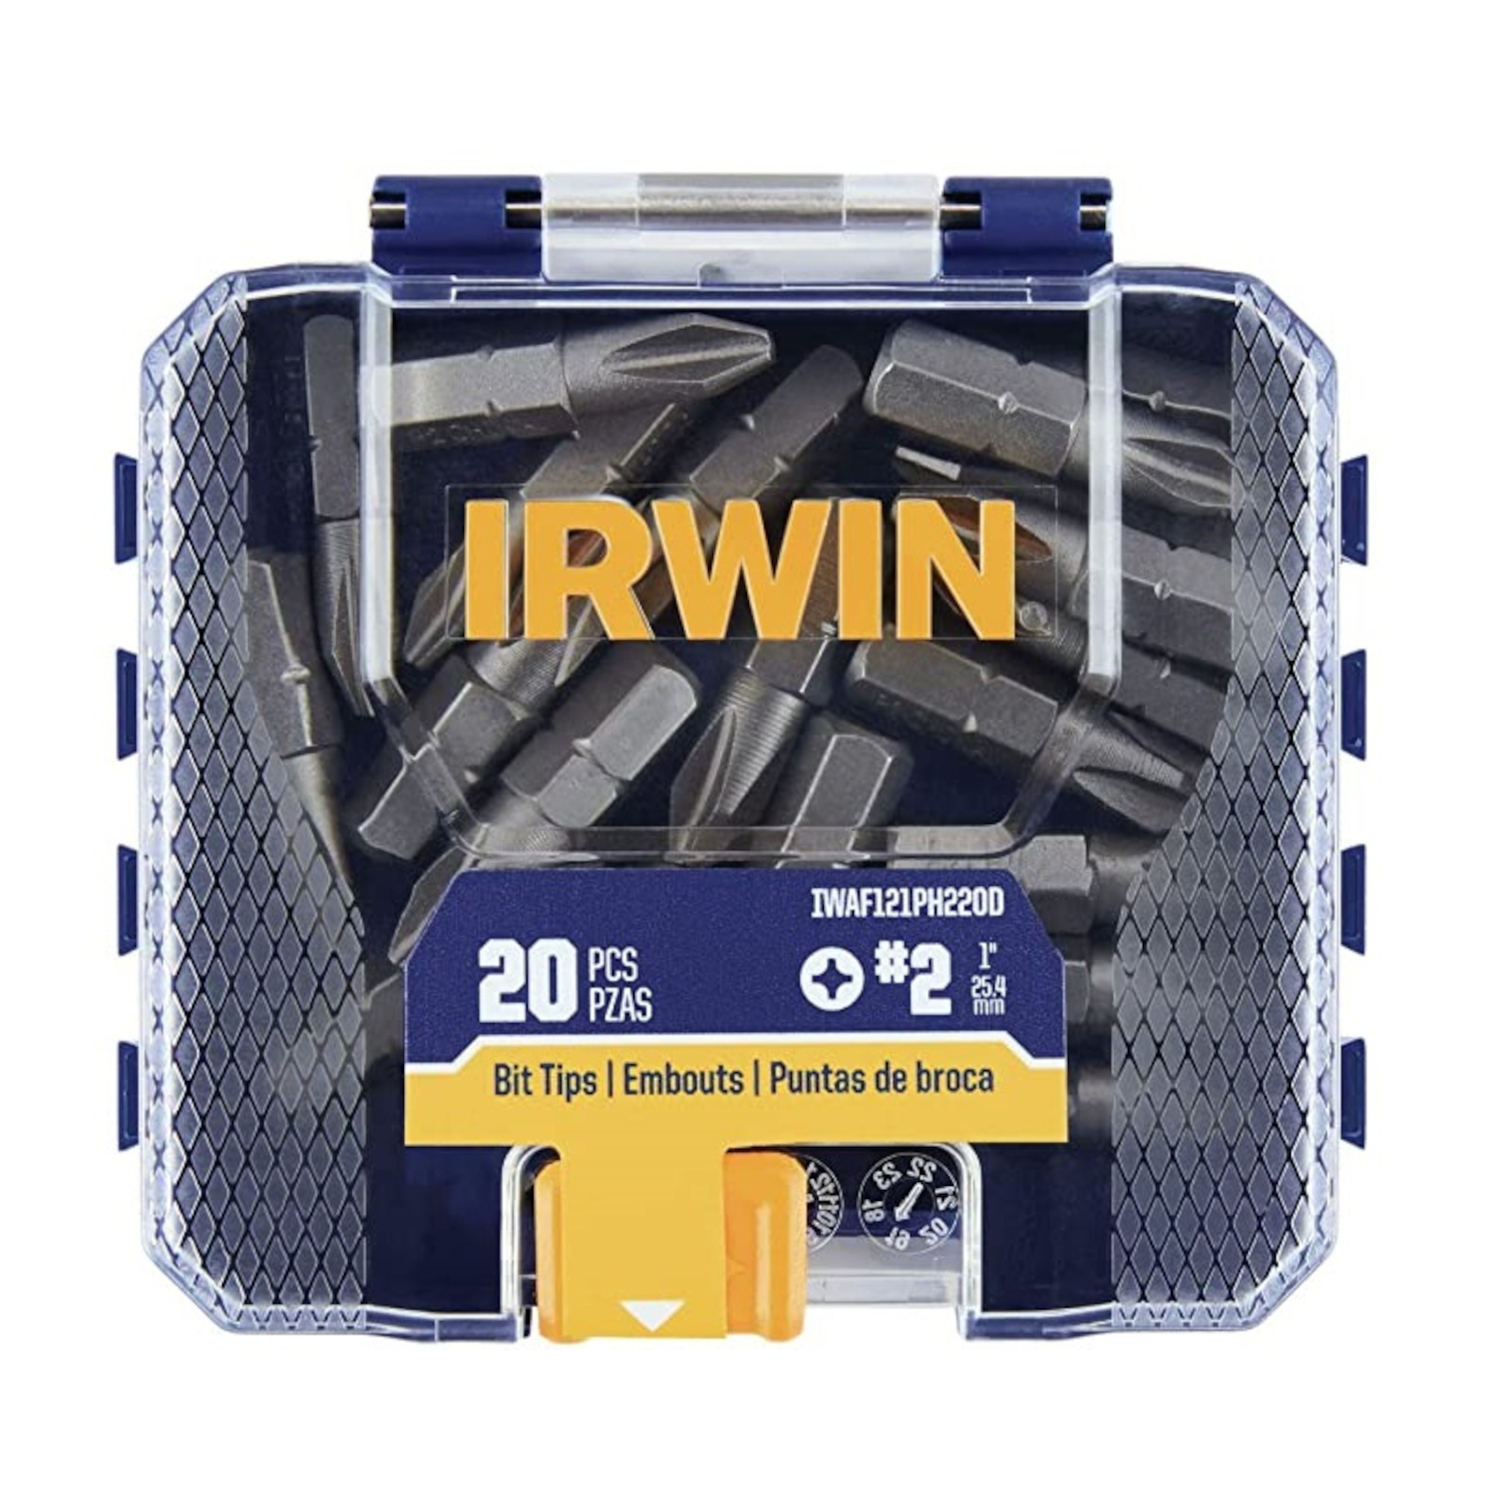 Photos - Drill Bit IRWIN Phillips #2 X 1 in. L Screwdriver Bit Set Steel 20 pc IWAF121PH220D 